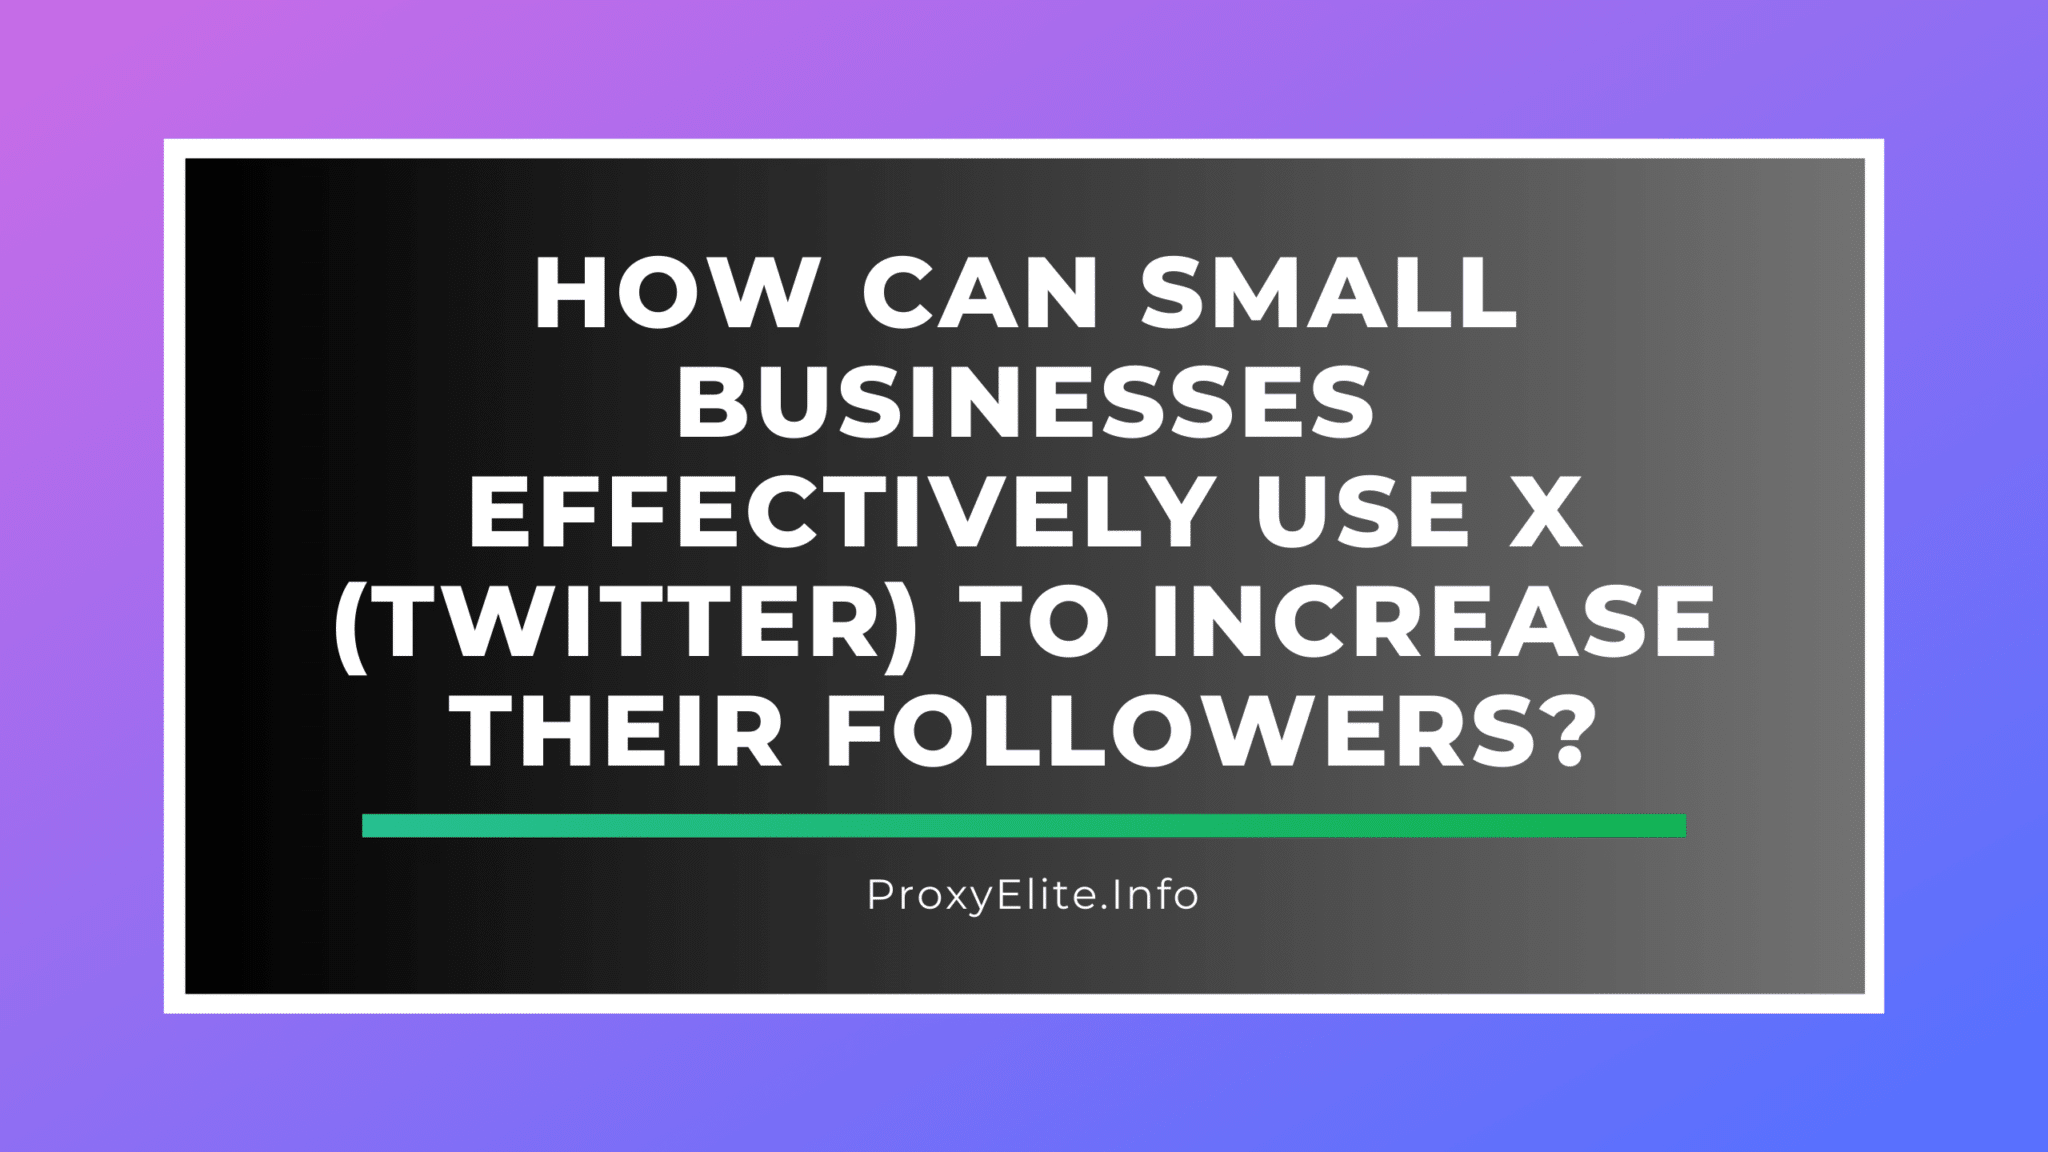 Wie können kleine Unternehmen X (Twitter) effektiv nutzen, um ihre Followerzahl zu erhöhen?